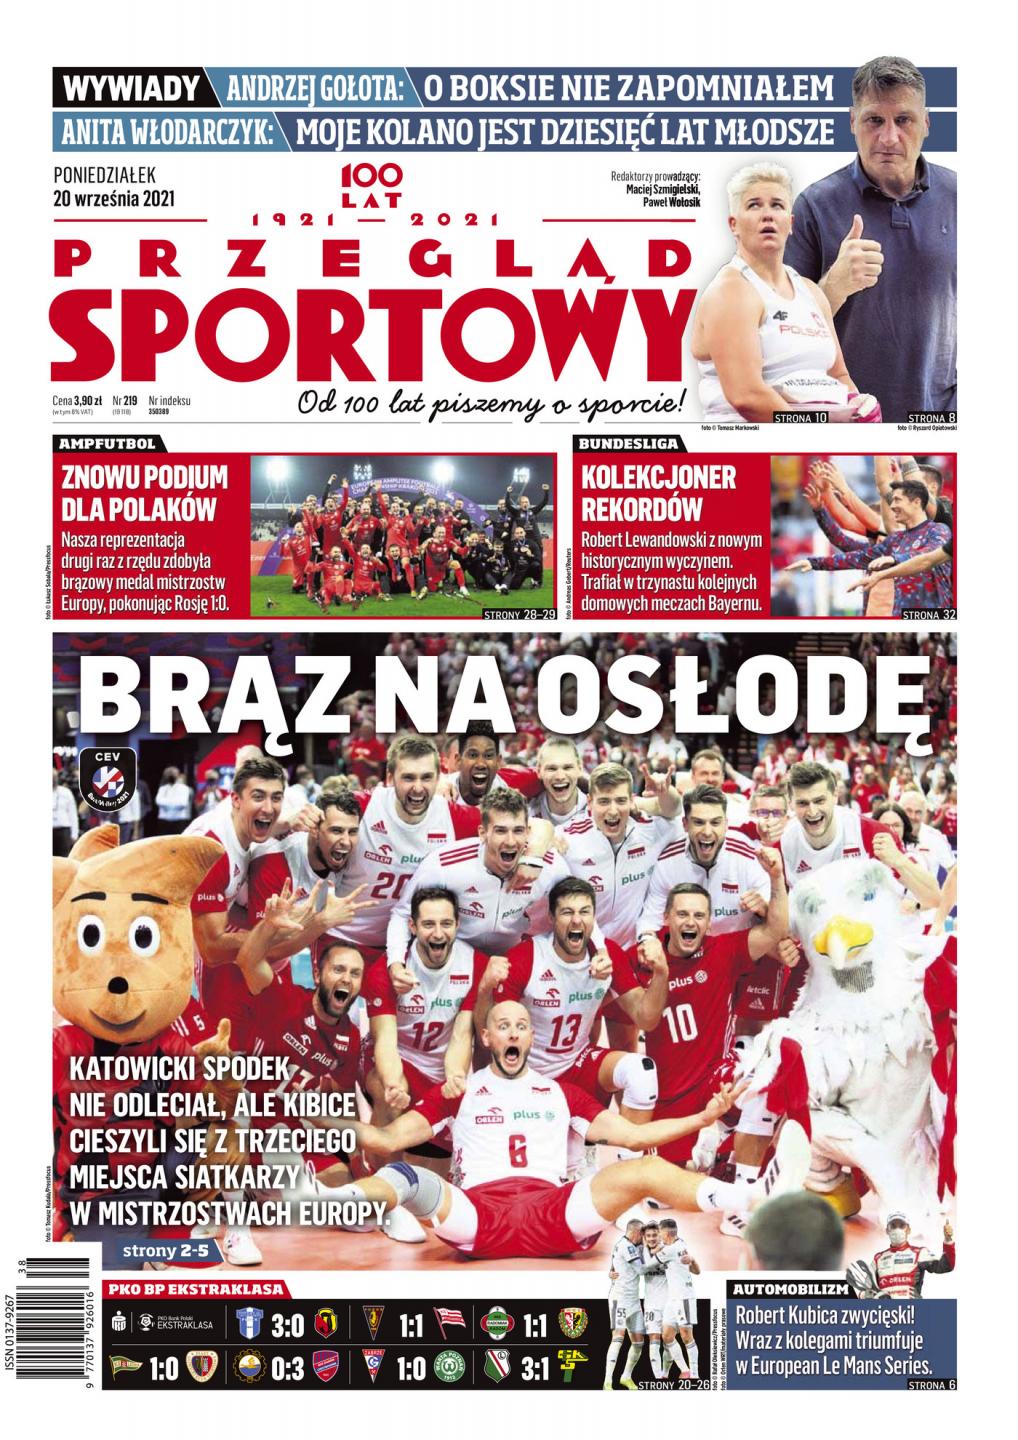 Okładka Przegląd Sportowy po meczu Polska - Rosja 1:0 amp futbol (19.09.2021).